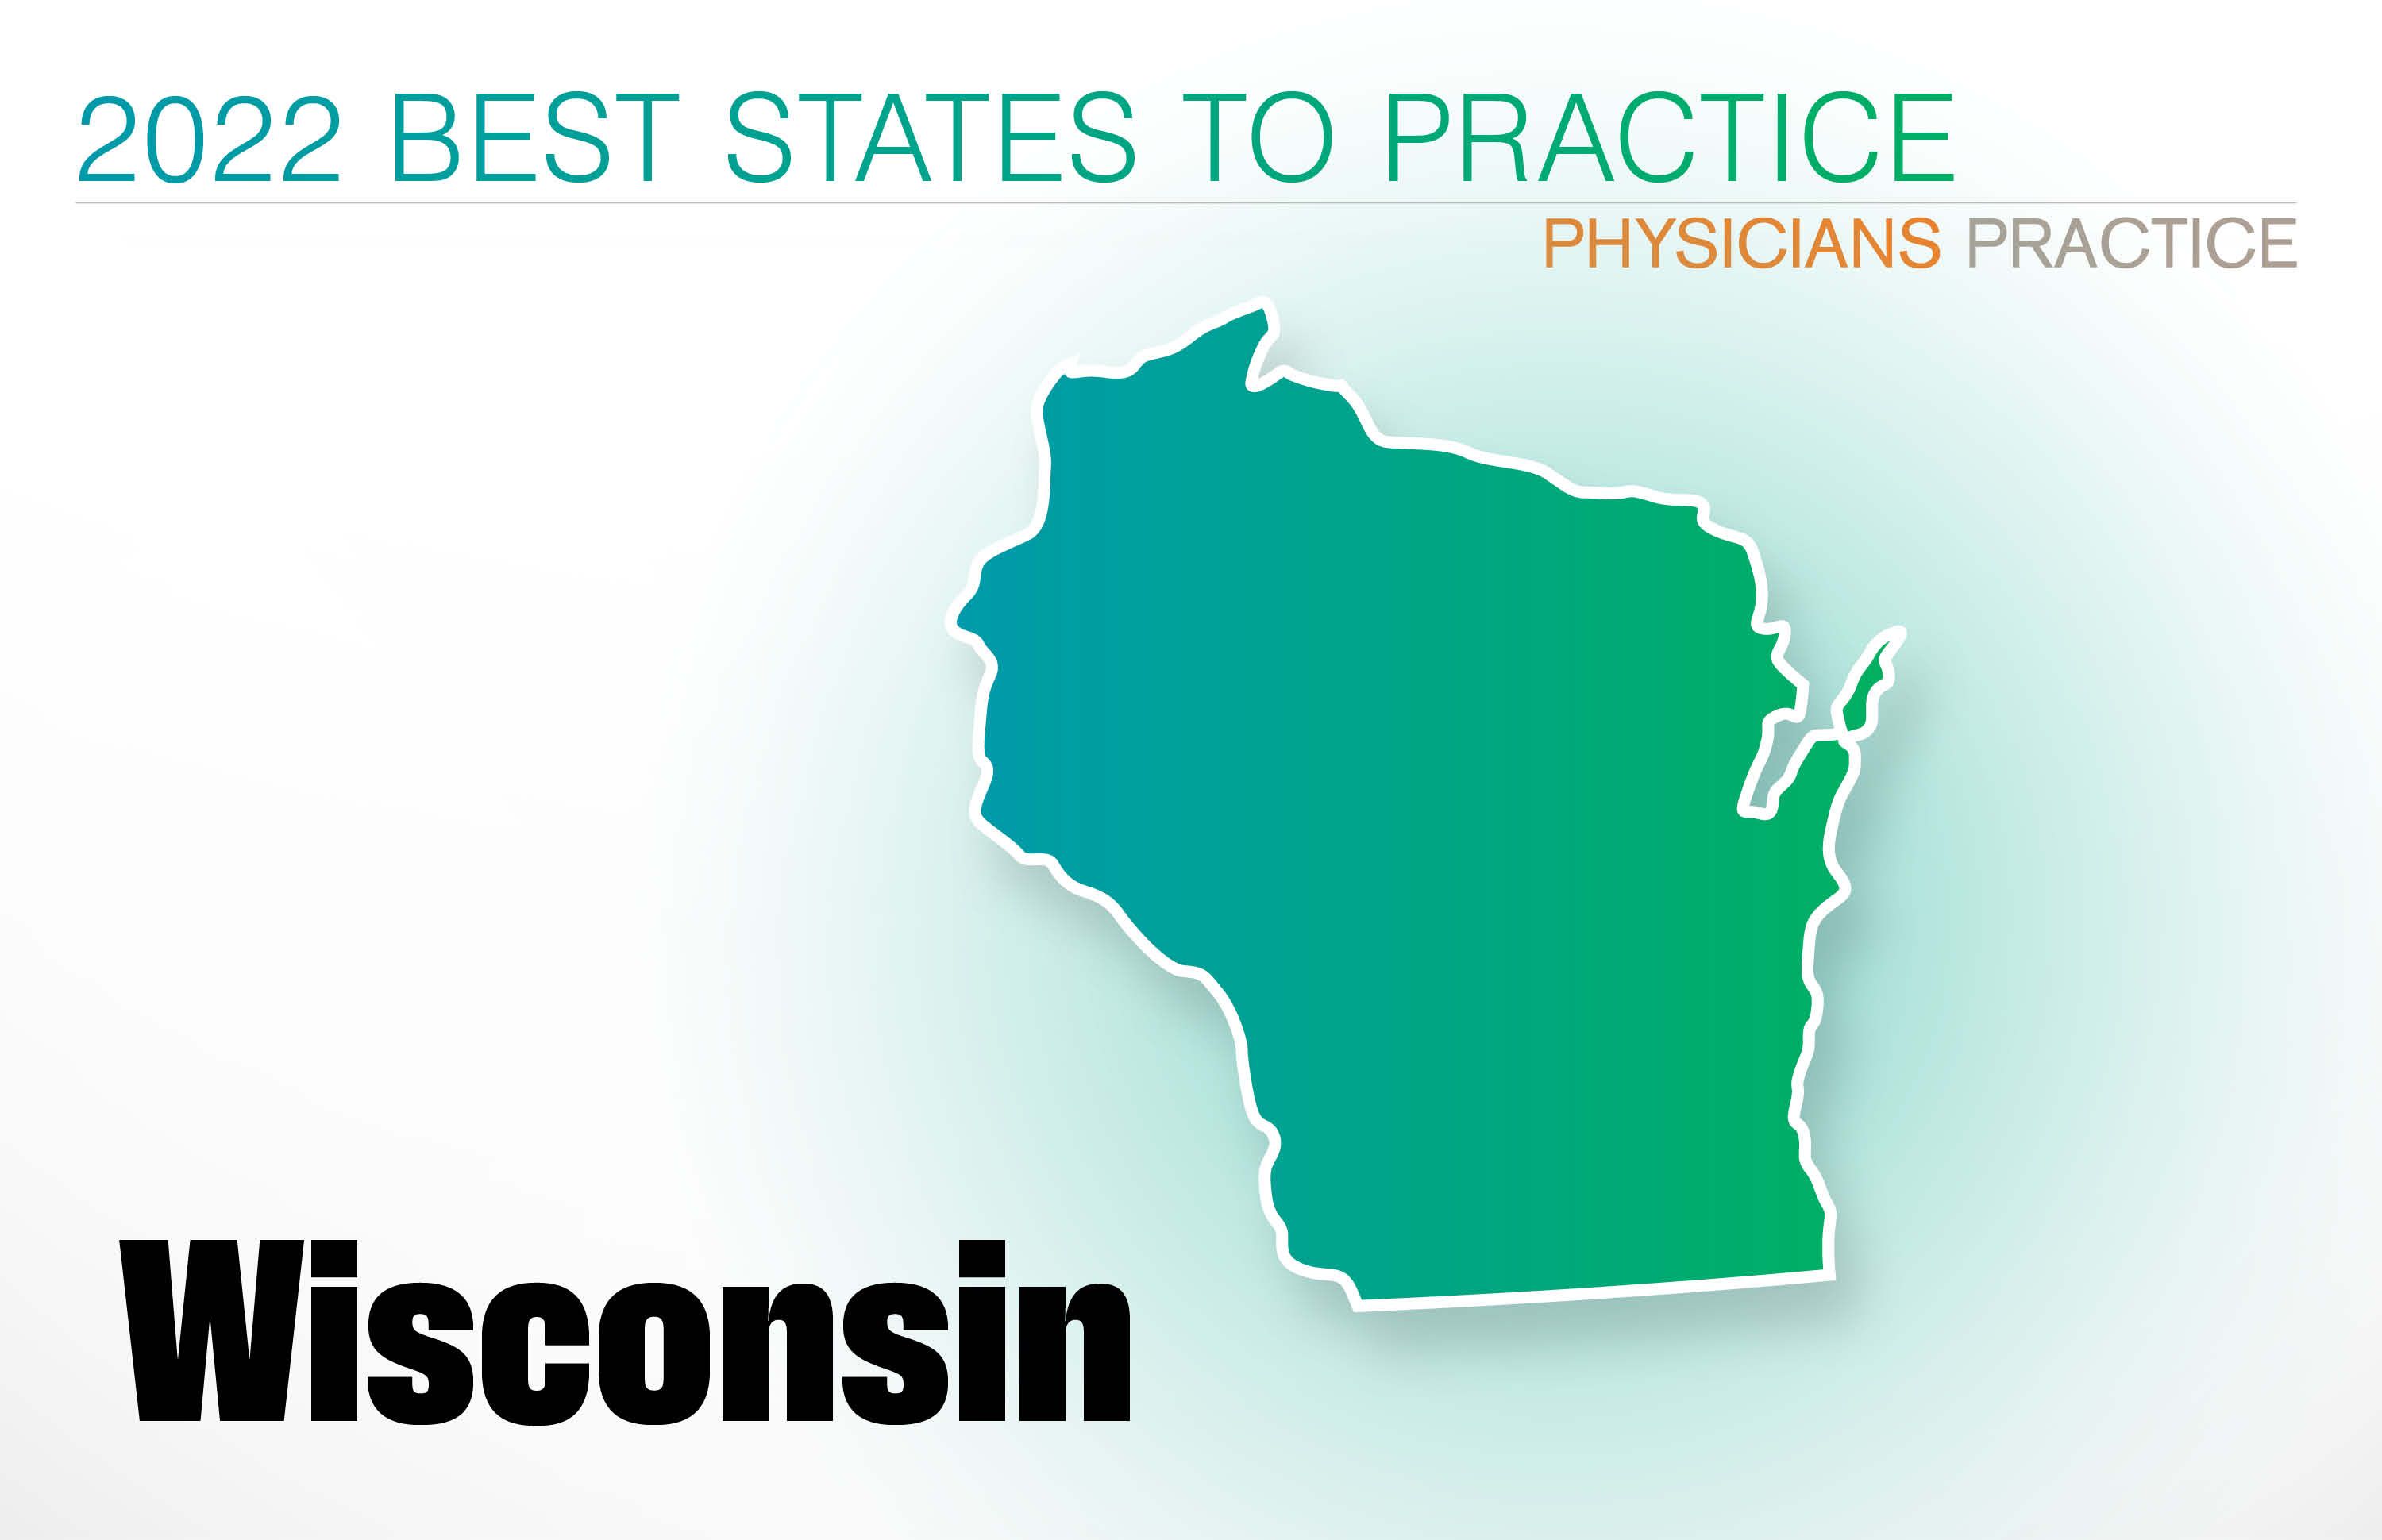 #8 Wisconsin